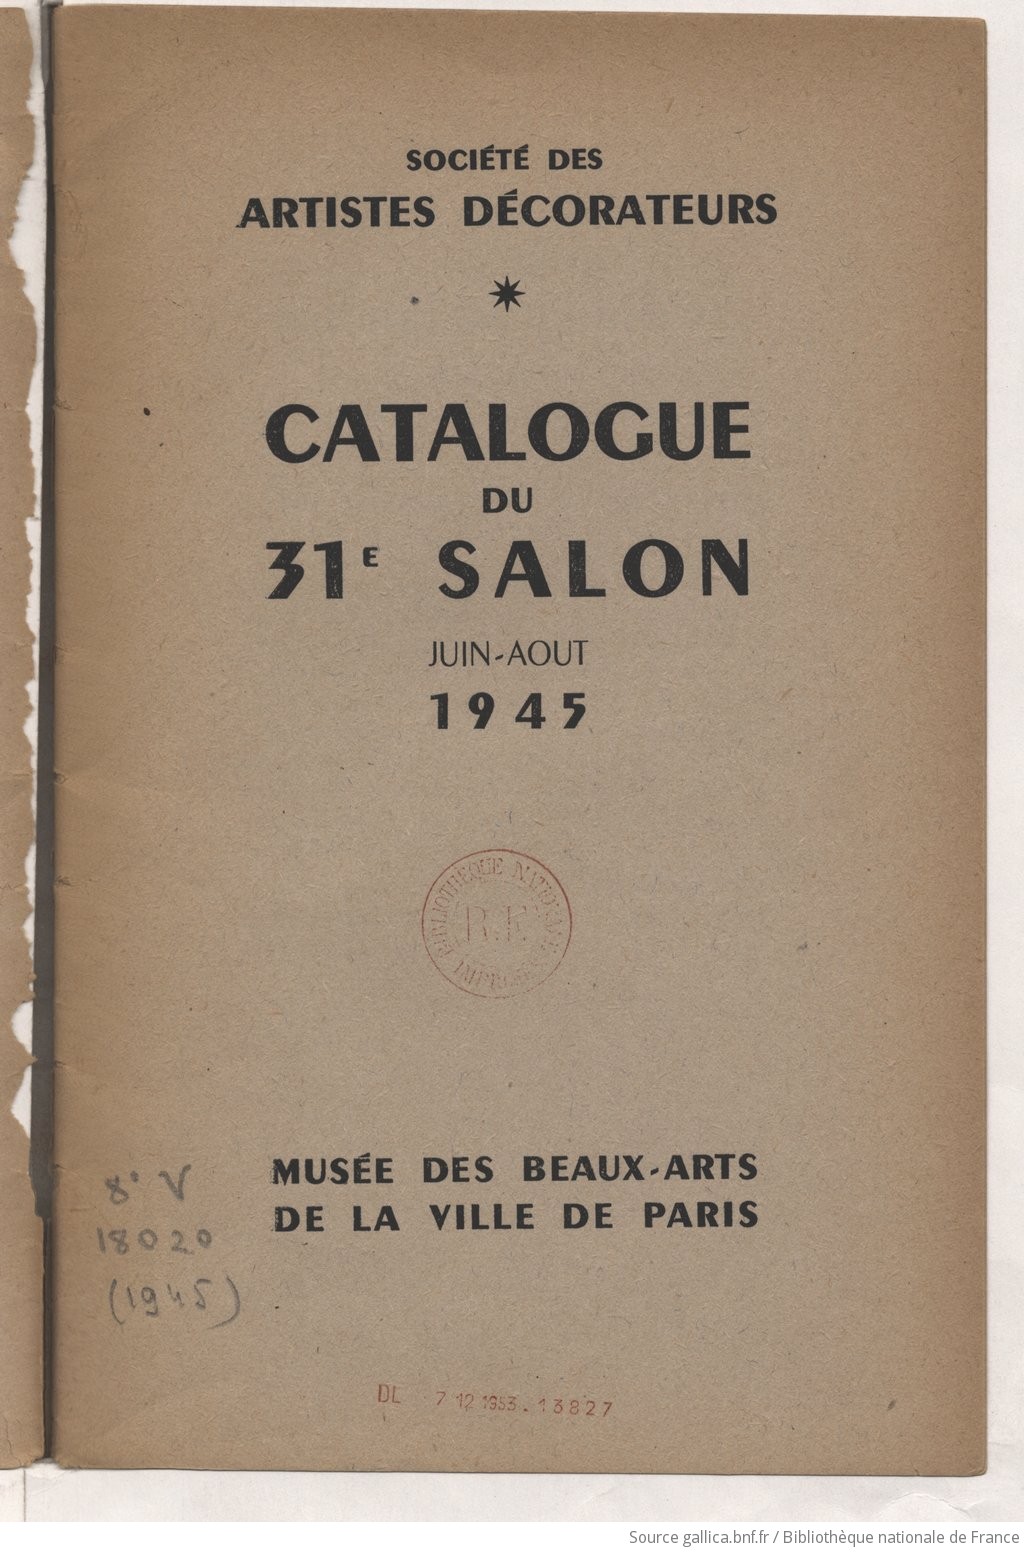 Catalogue Du Salon Societe Des Artistes Decorateurs 1945 Gallica